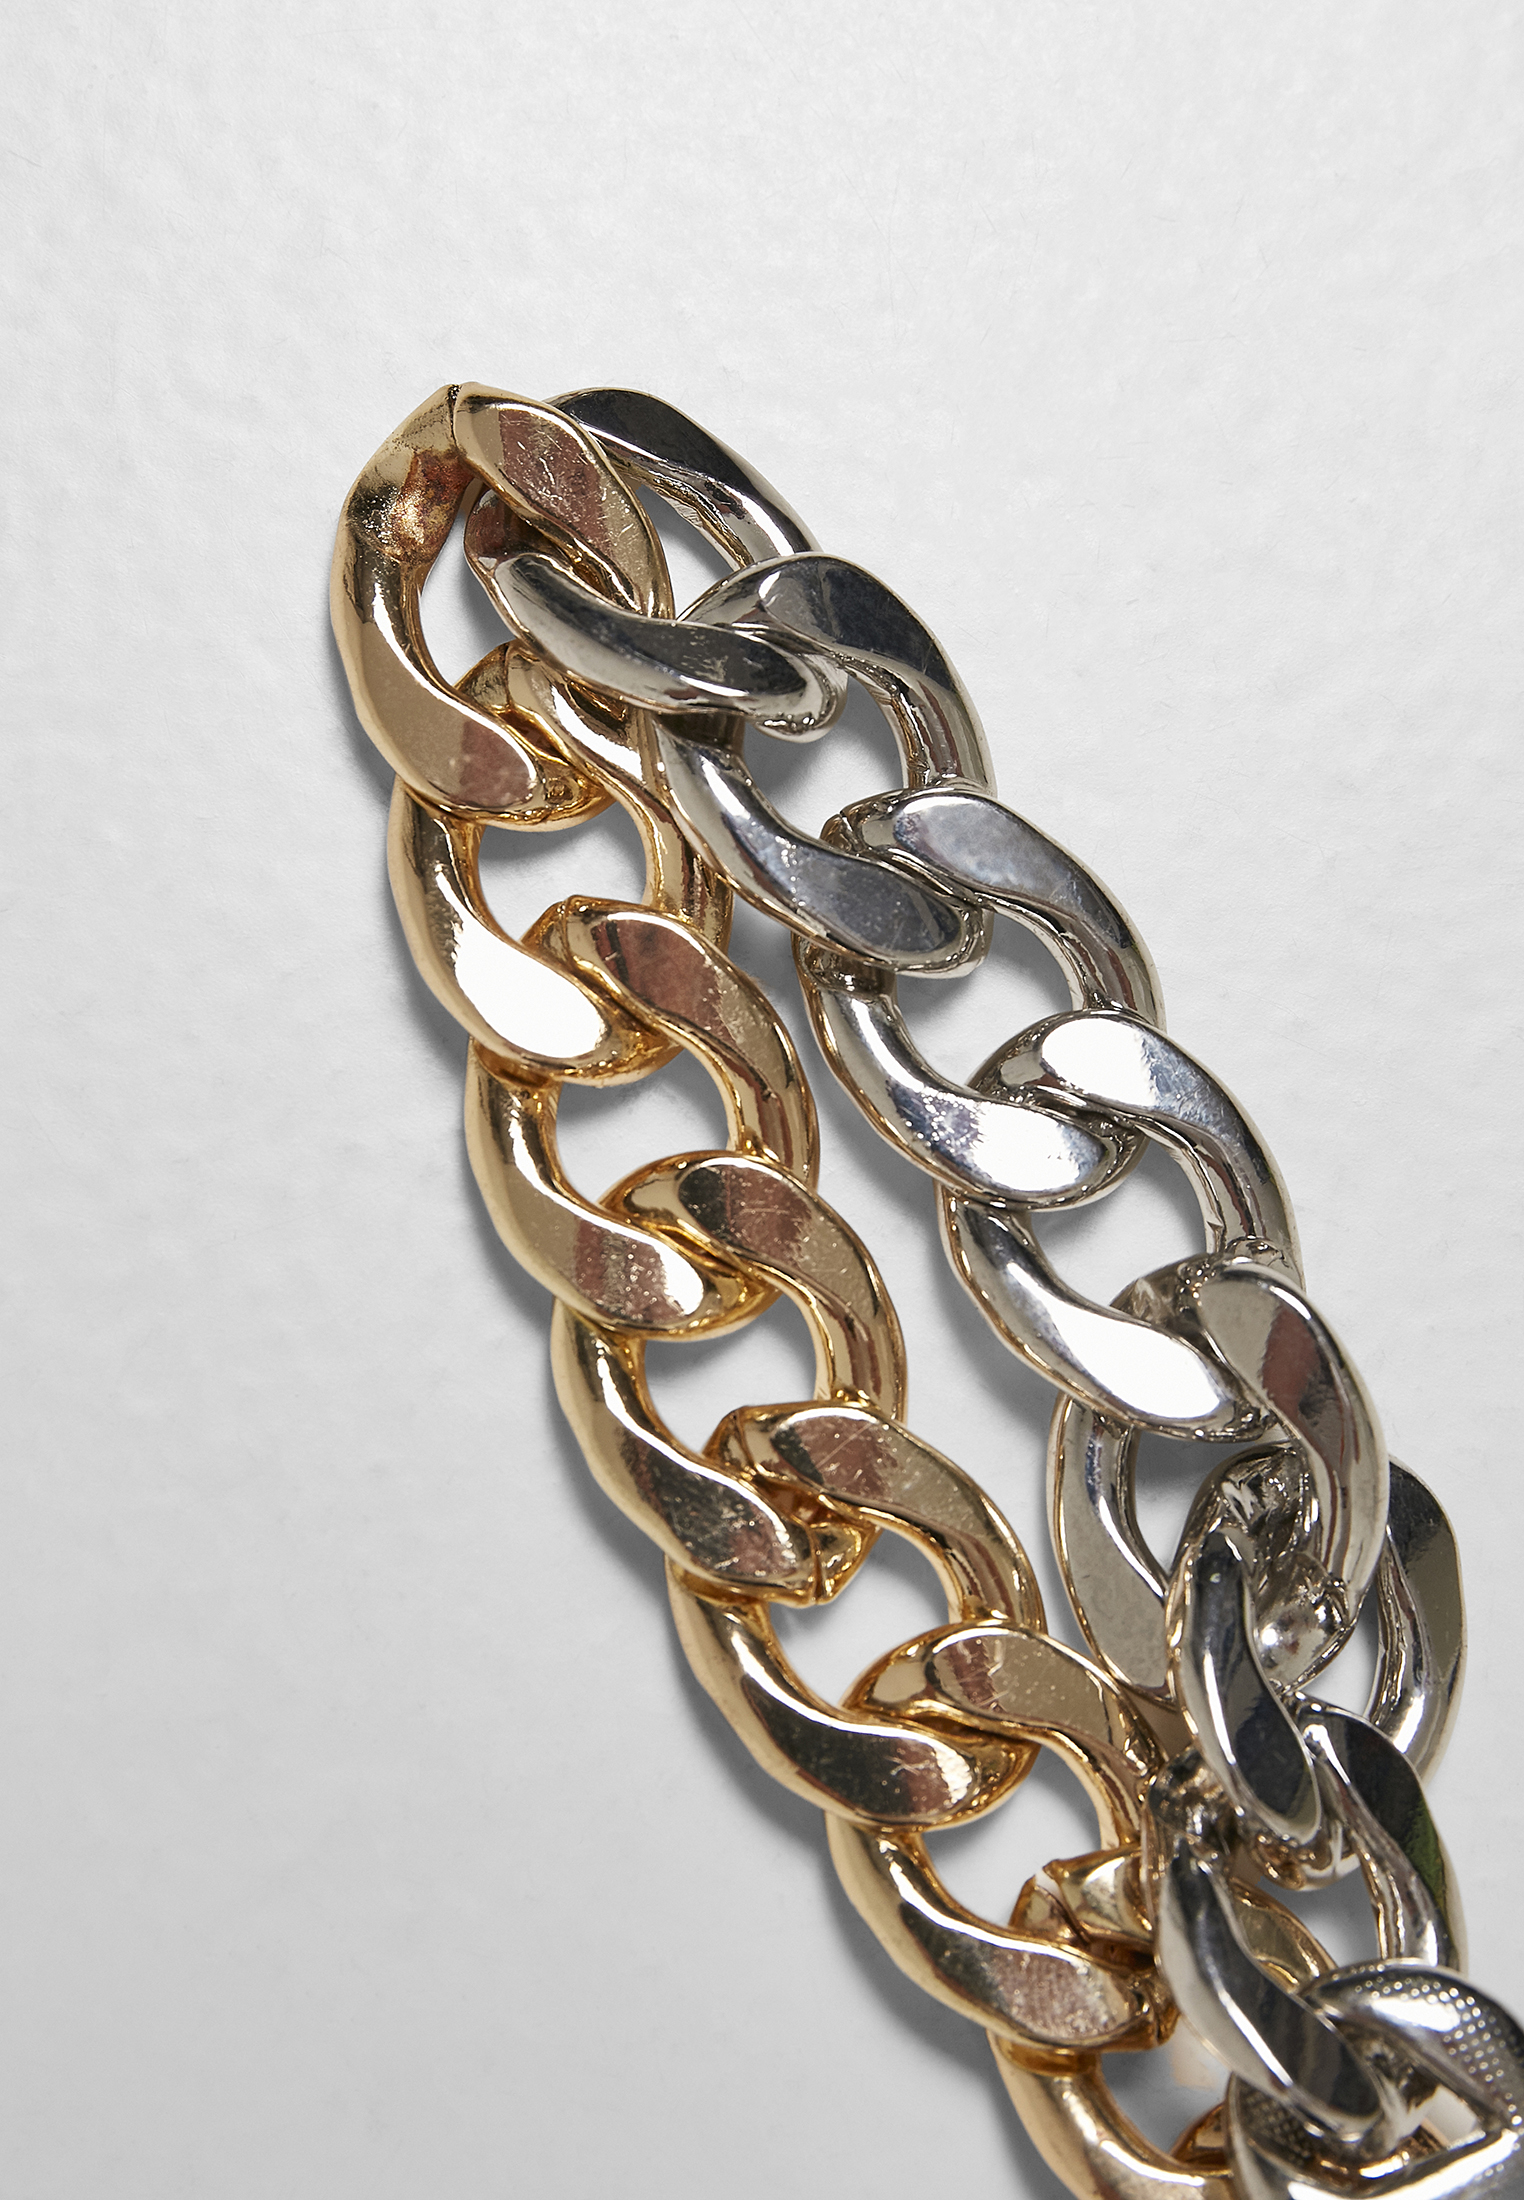 Schmuck Heavy Two-Tone Bracelet in Farbe gold/silver